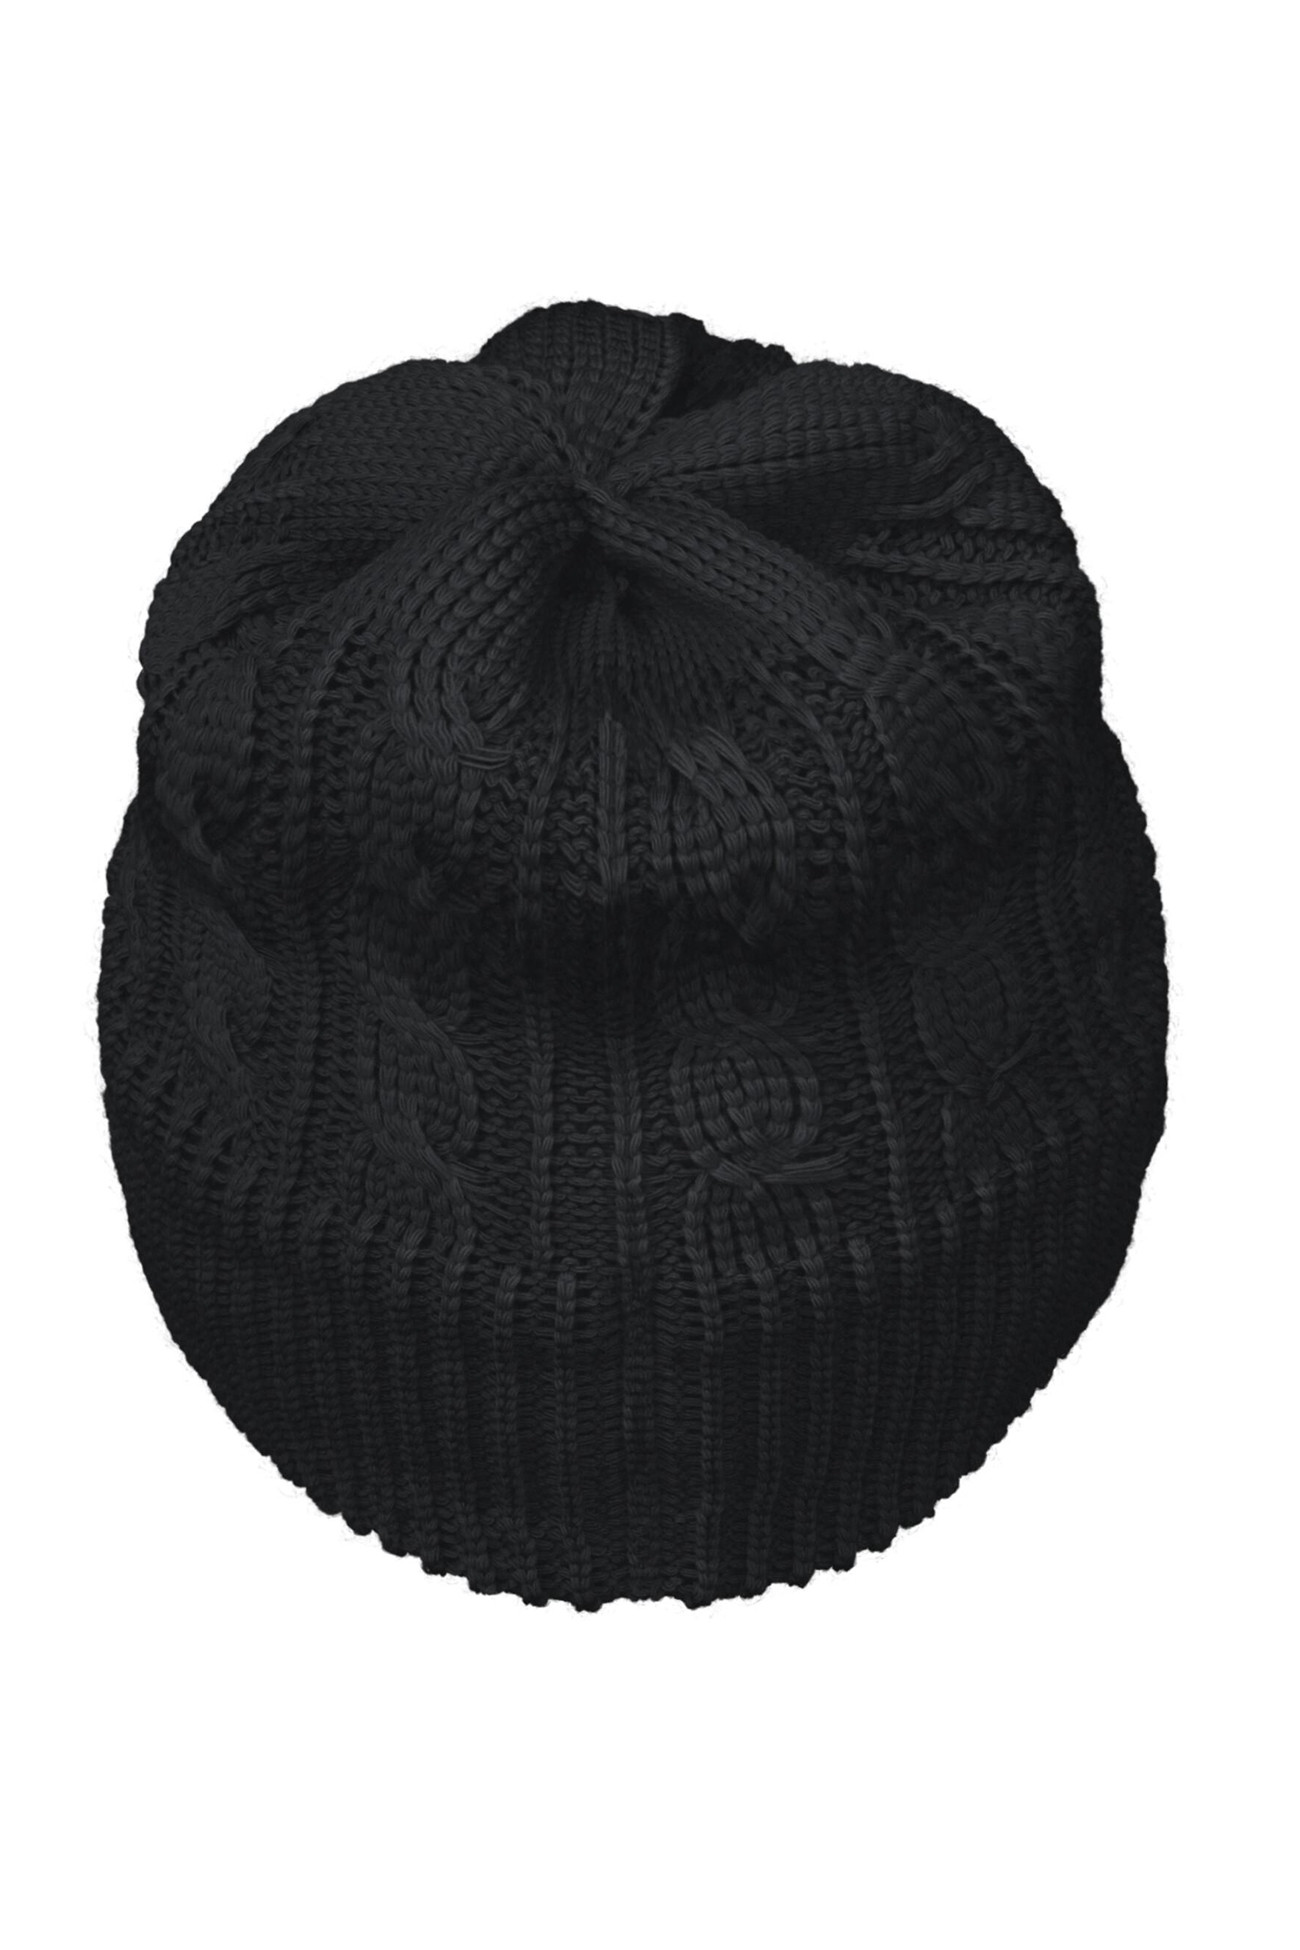 Шапка женская Under Armour Halftime Cable Knit Beanie черная 1379995-001 изображение 4